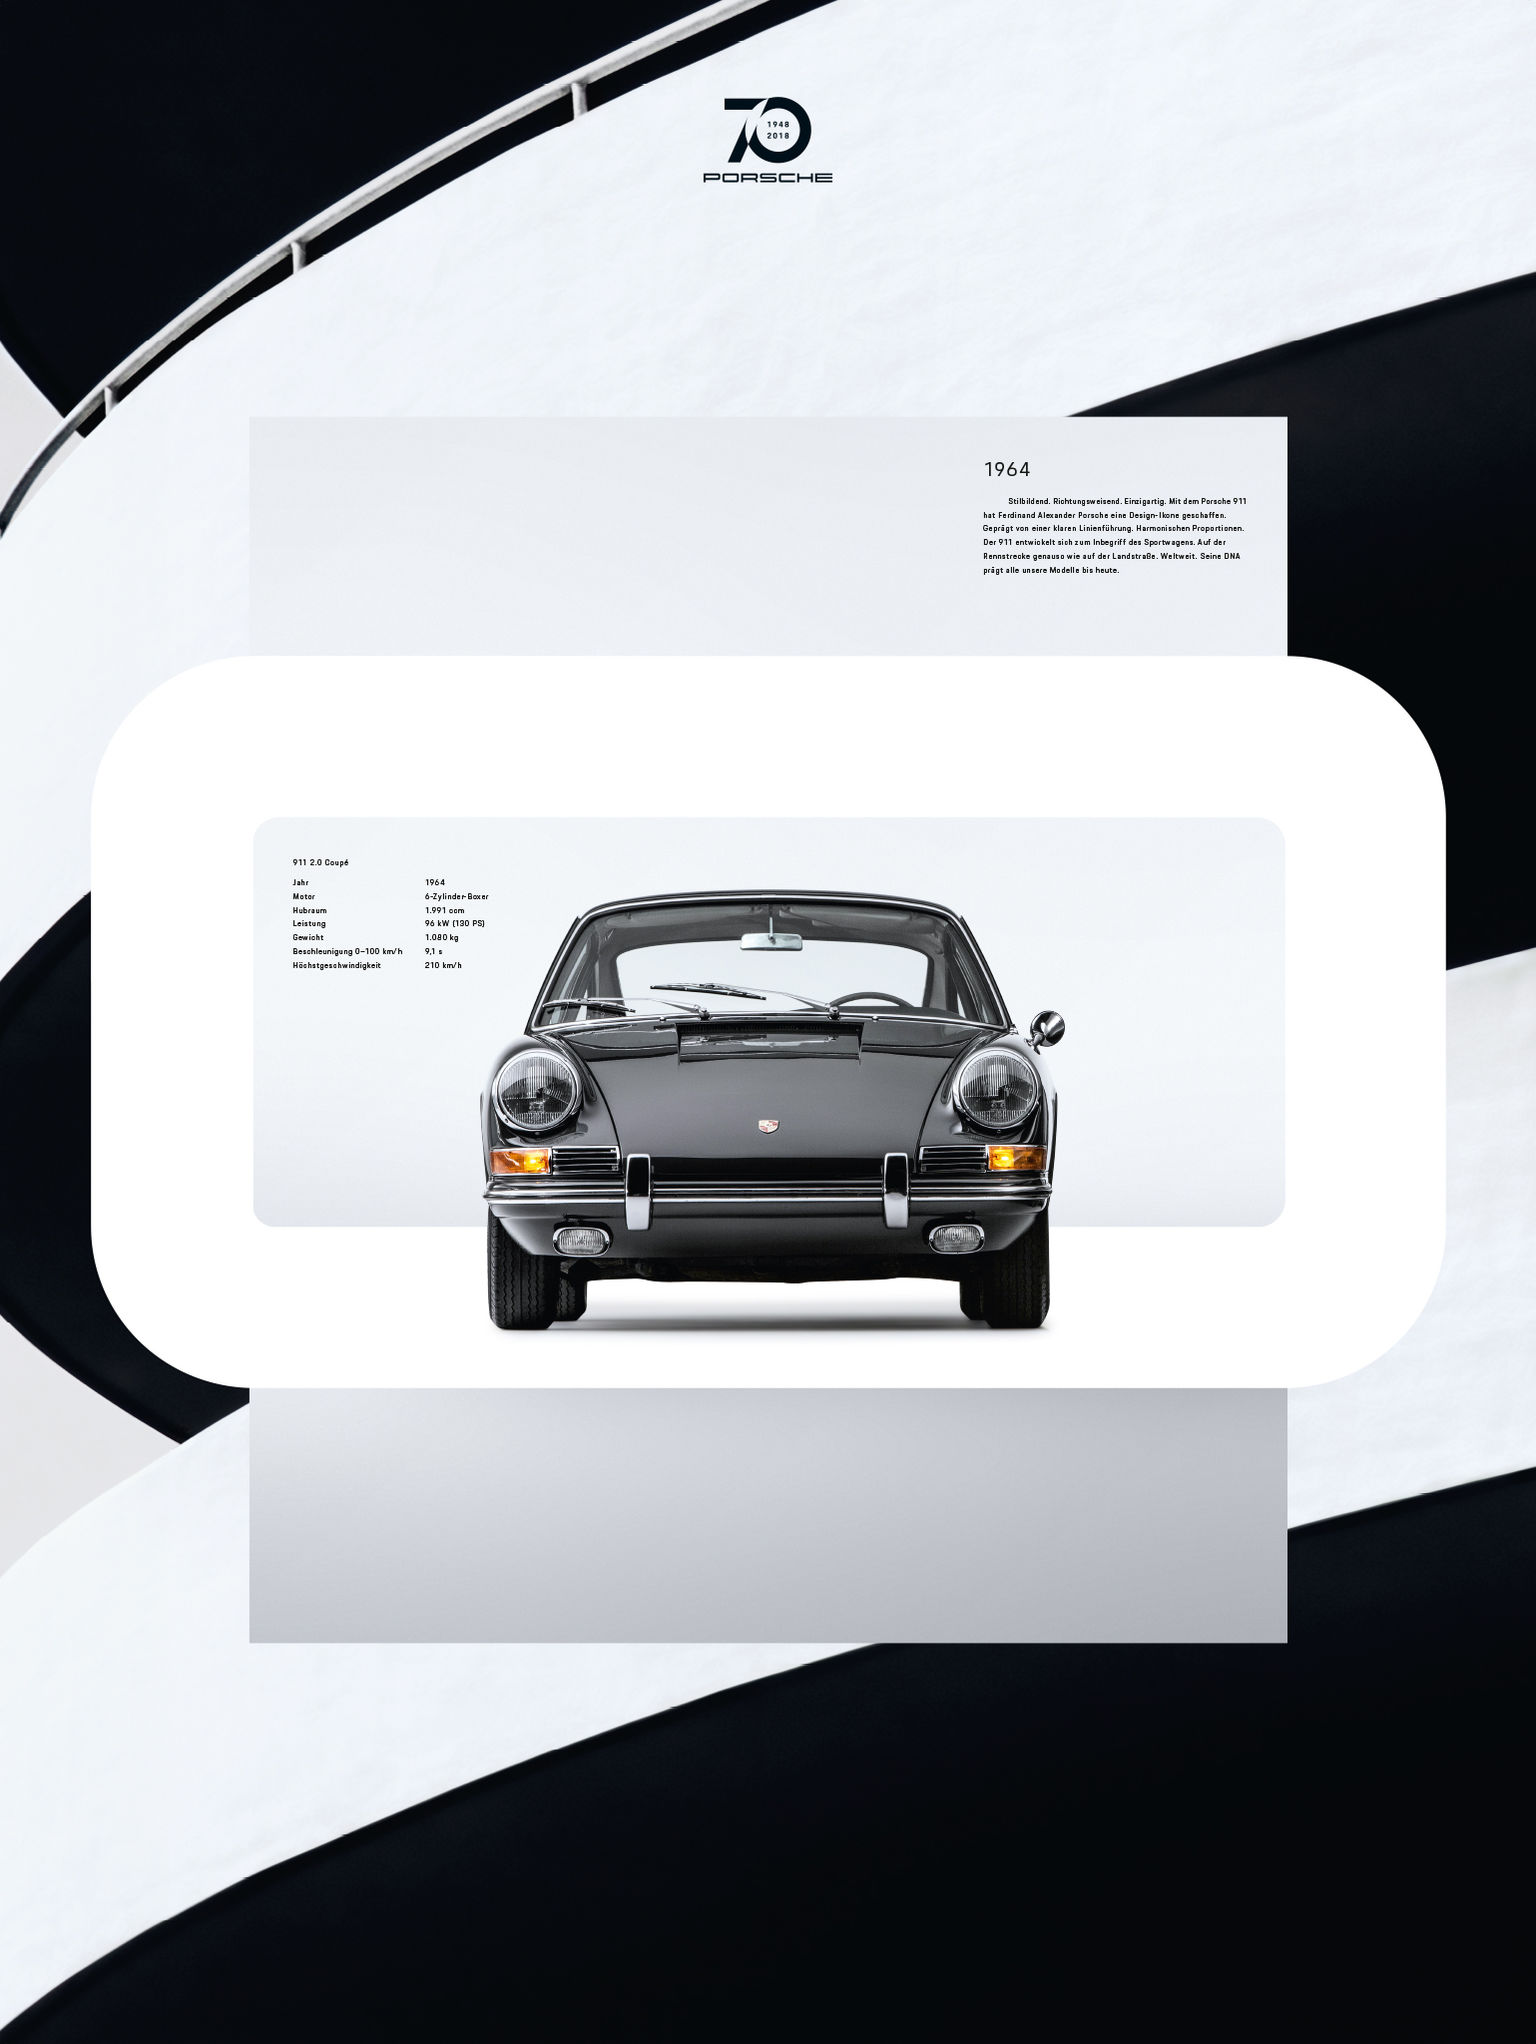 Porsche - 70 years Poster Series